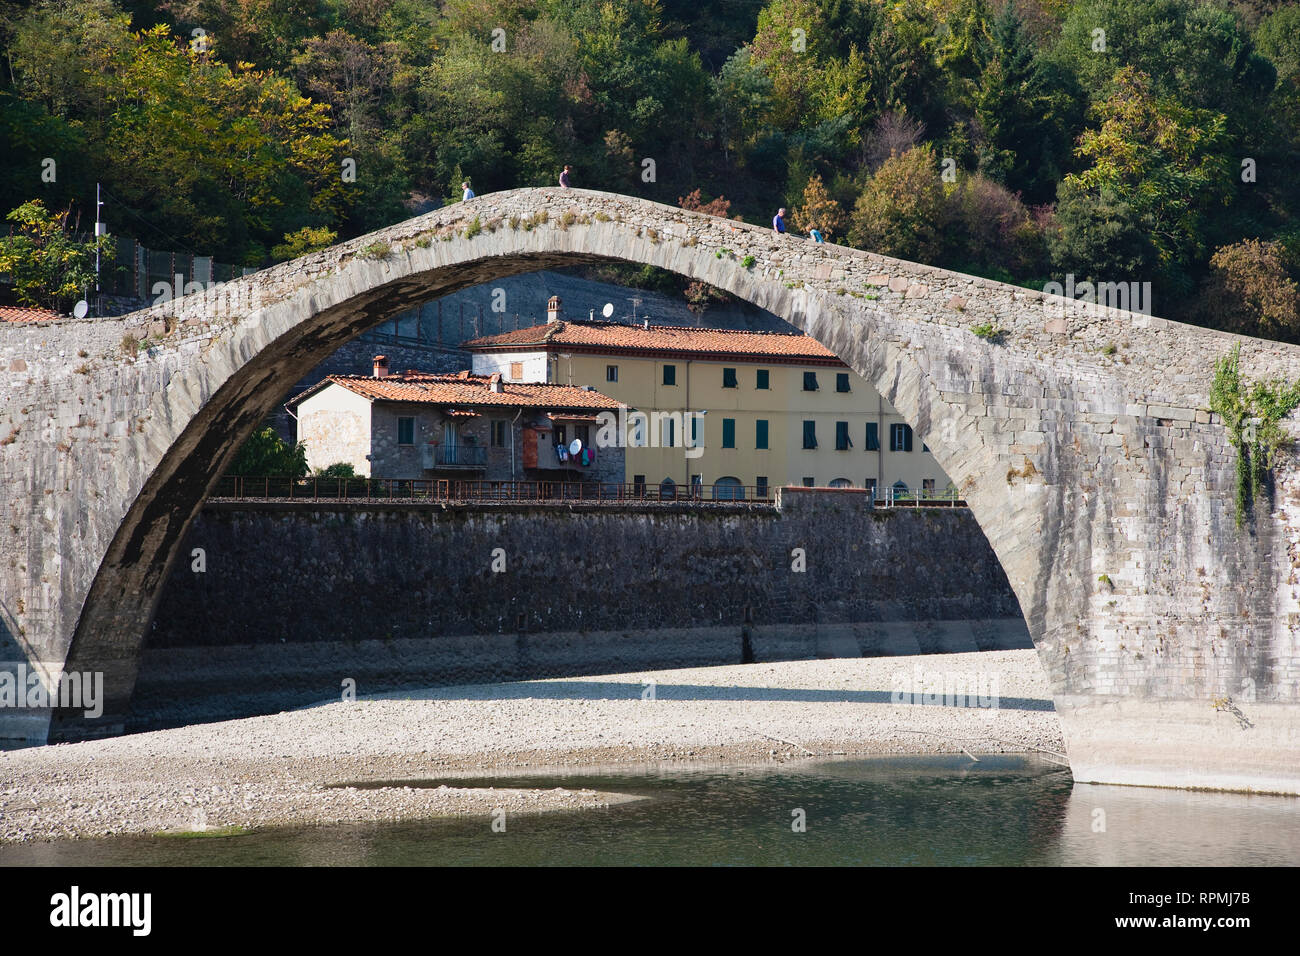 Italie, Toscane, Lucca, la Garfagnana, Bagni di Lucca, Devil's aka Maddalena's Bridge avec les gens marcher sur l'arc haut Banque D'Images